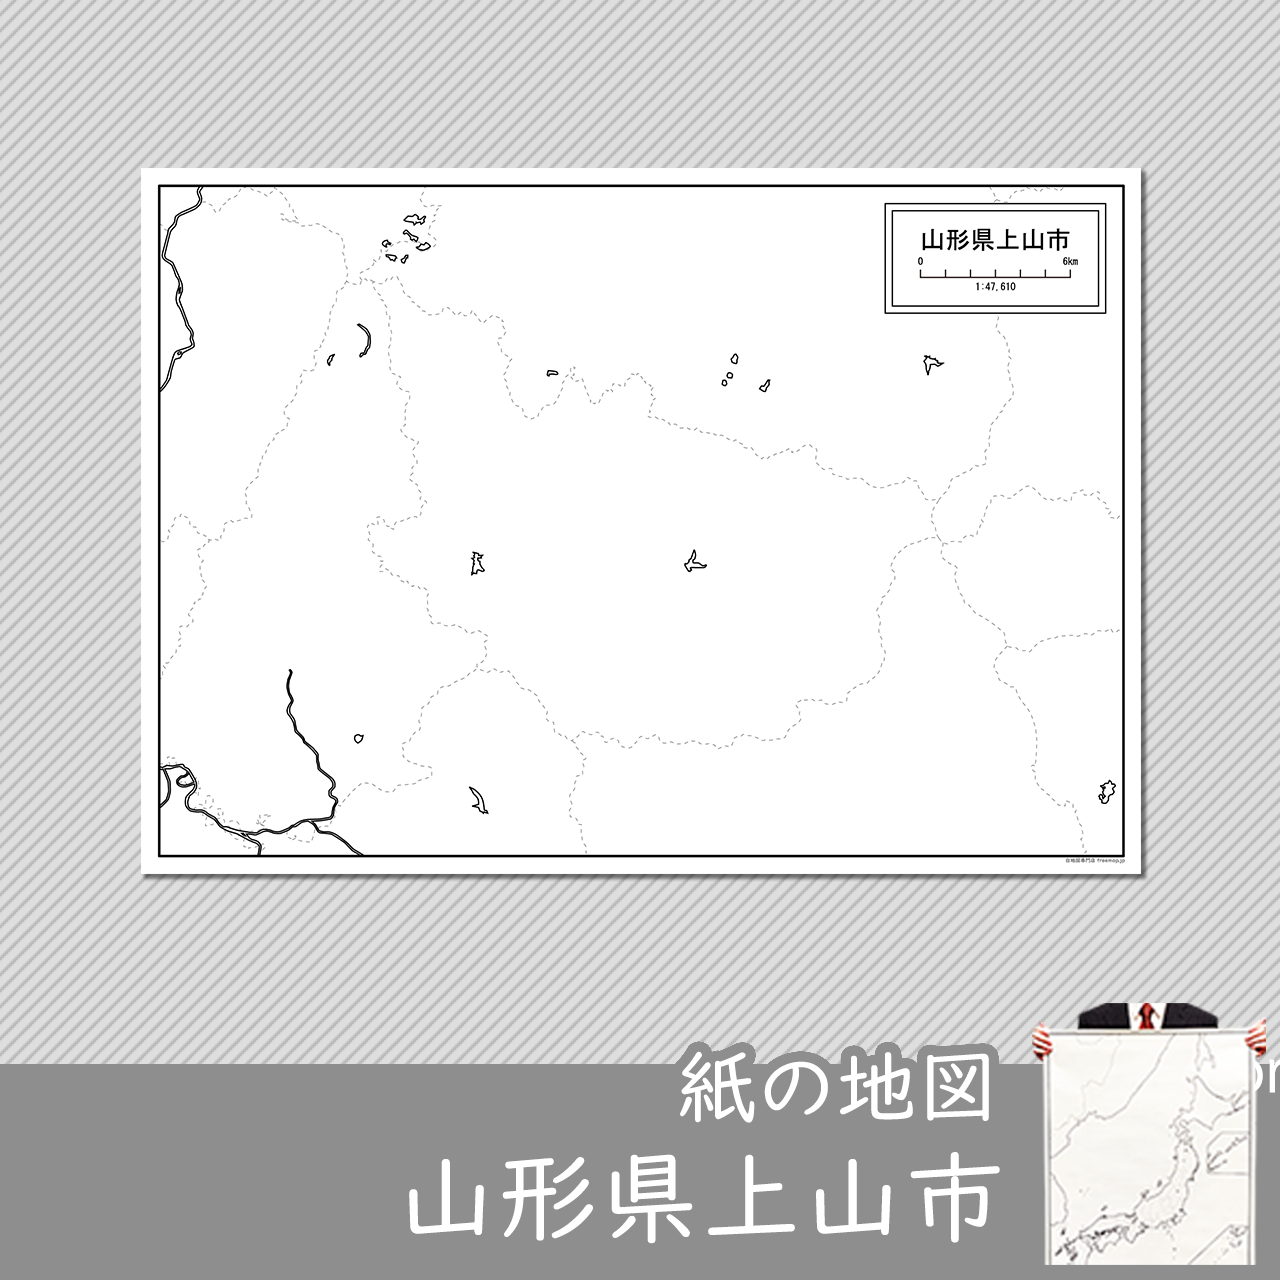 上山市の紙の白地図